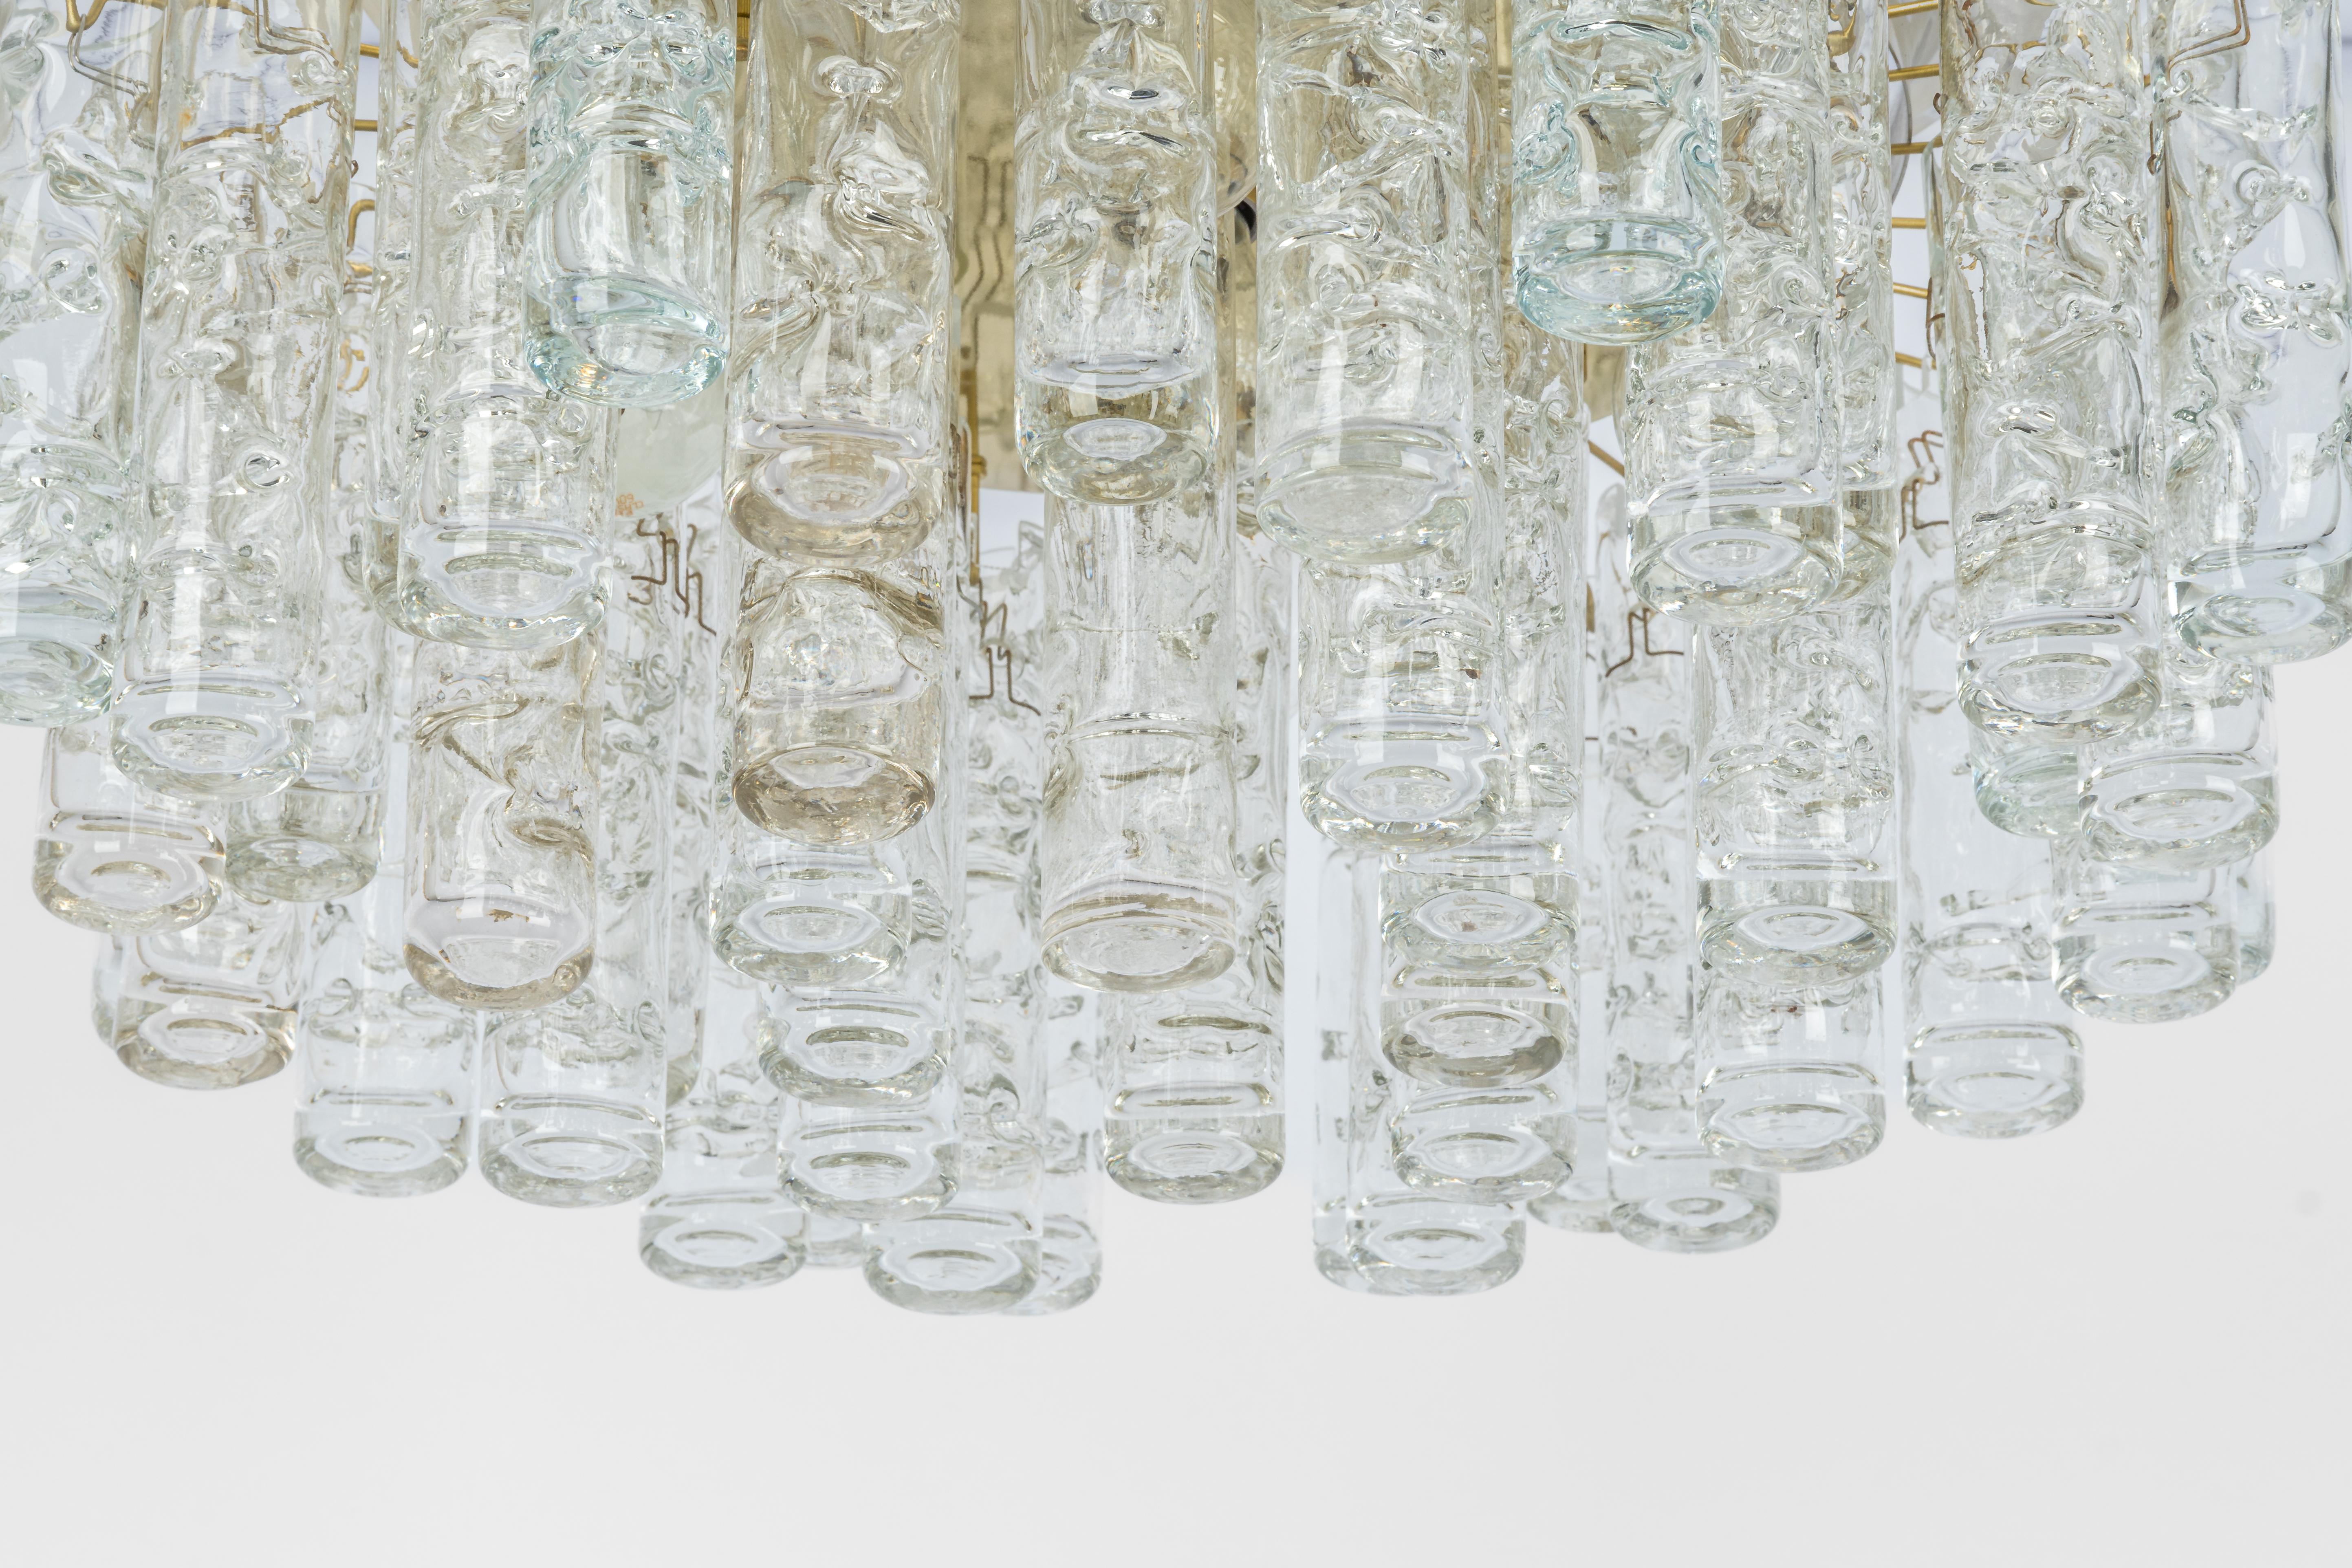 Fantastischer Kronleuchter aus der Mitte des Jahrhunderts von Doria, Deutschland, hergestellt ca. 1960-1969. Mehrere Murano-Glaszylinder hängen an der Leuchte.

Schwere Qualität und in sehr gutem Zustand. Gereinigt, gut verkabelt und